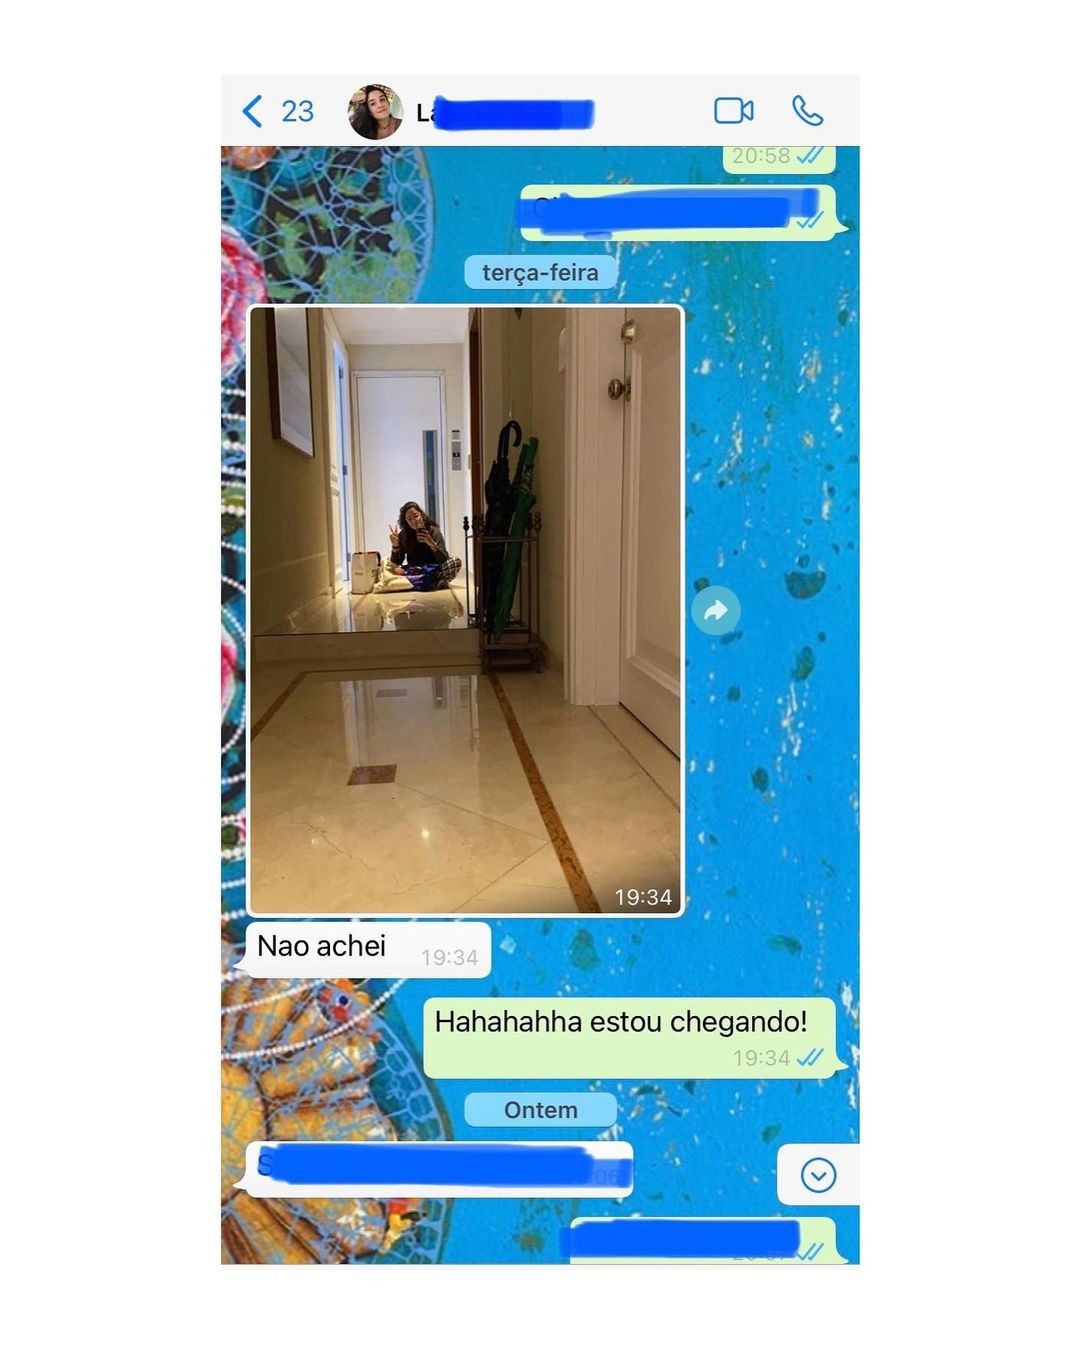 Natasha Dantas posta print de mensagem trocada com Laura (Foto: Reprodução/Instagram)